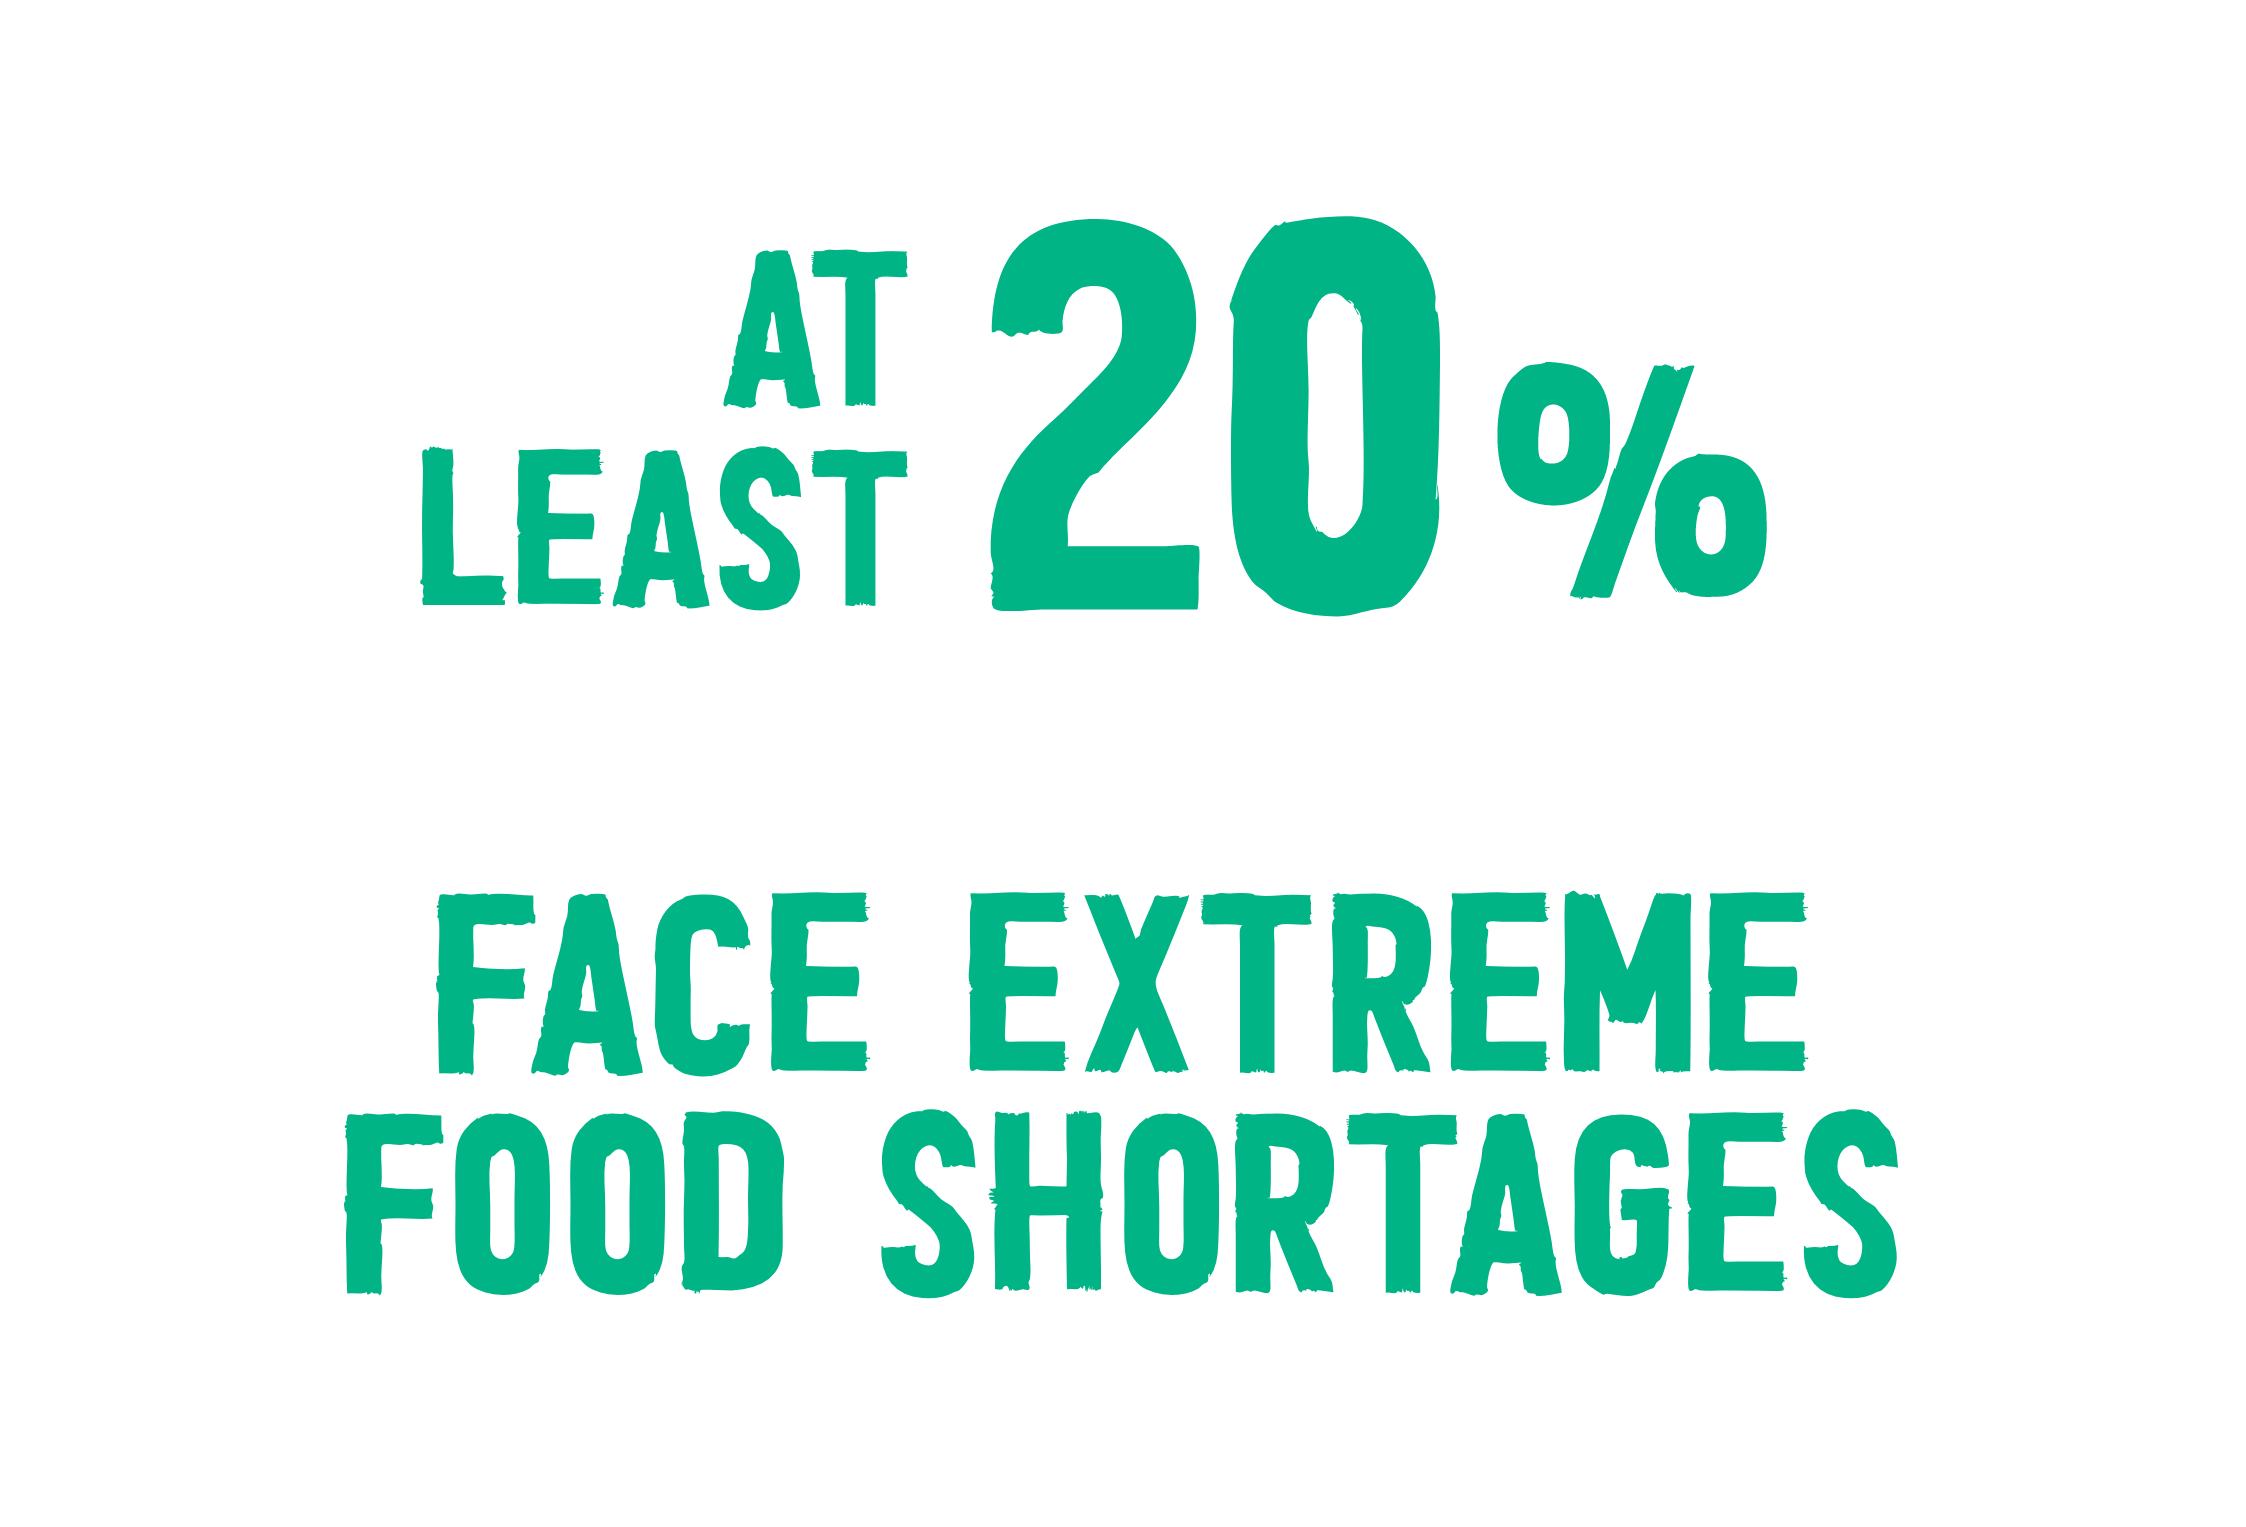 По крайней мере, 20% домохозяйств сталкиваются с крайней нехваткой продовольствия